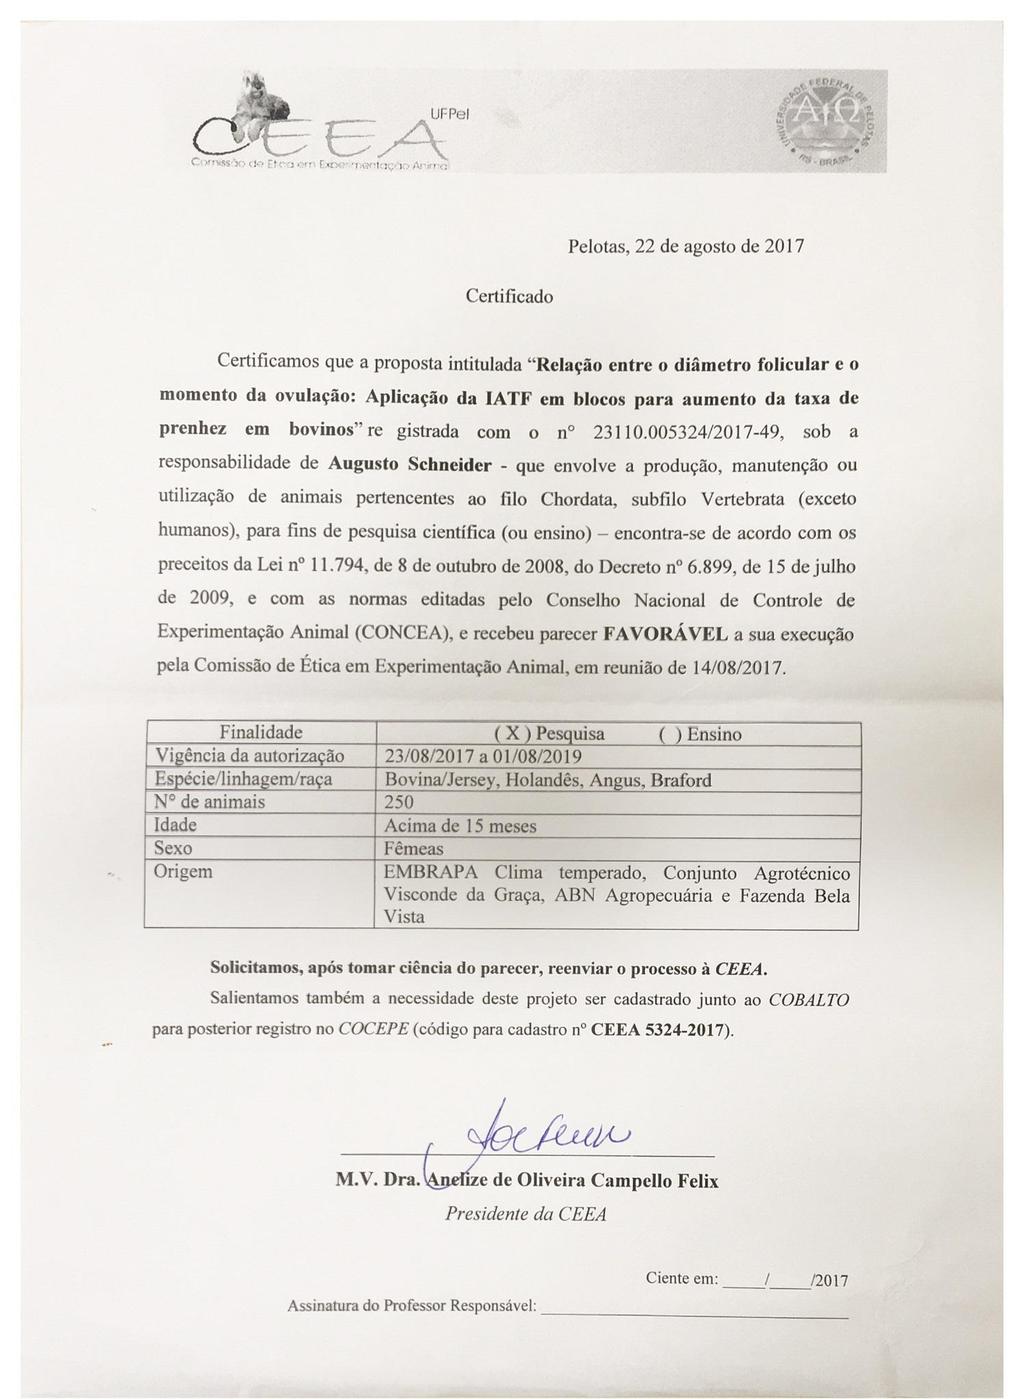 Anexo I - Documento da Comissão